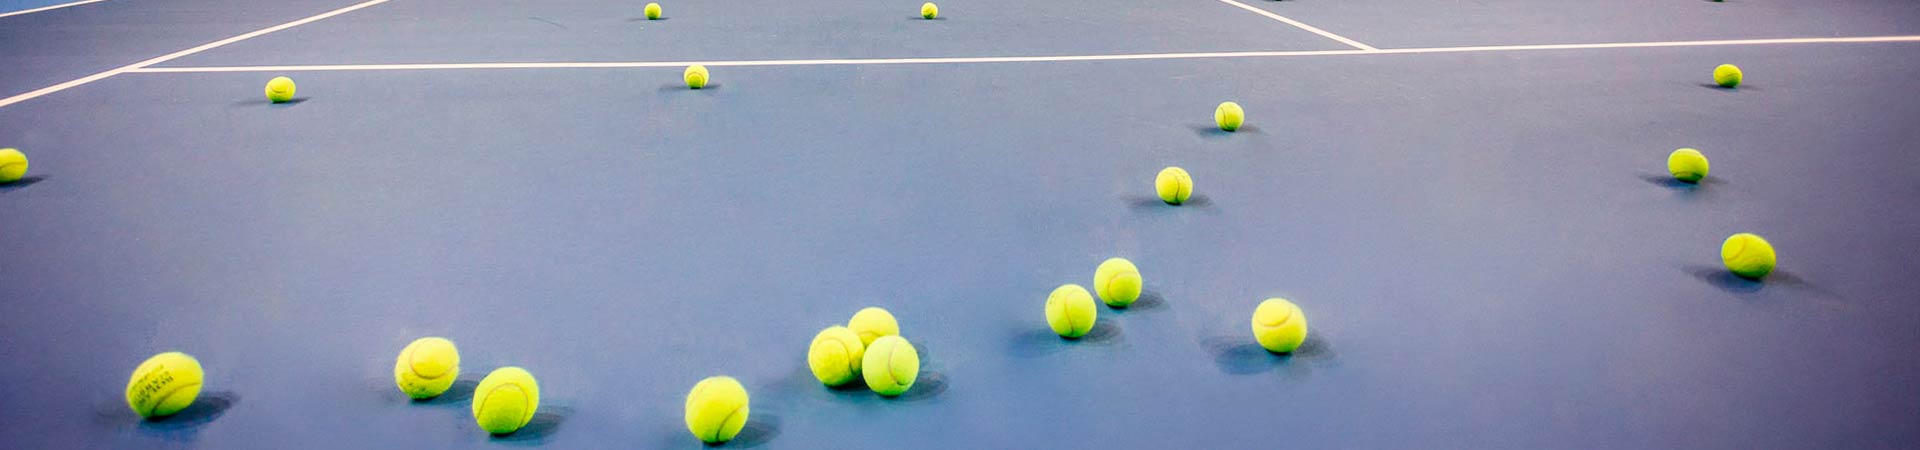 Преимущества обучения игре в большой теннис фото